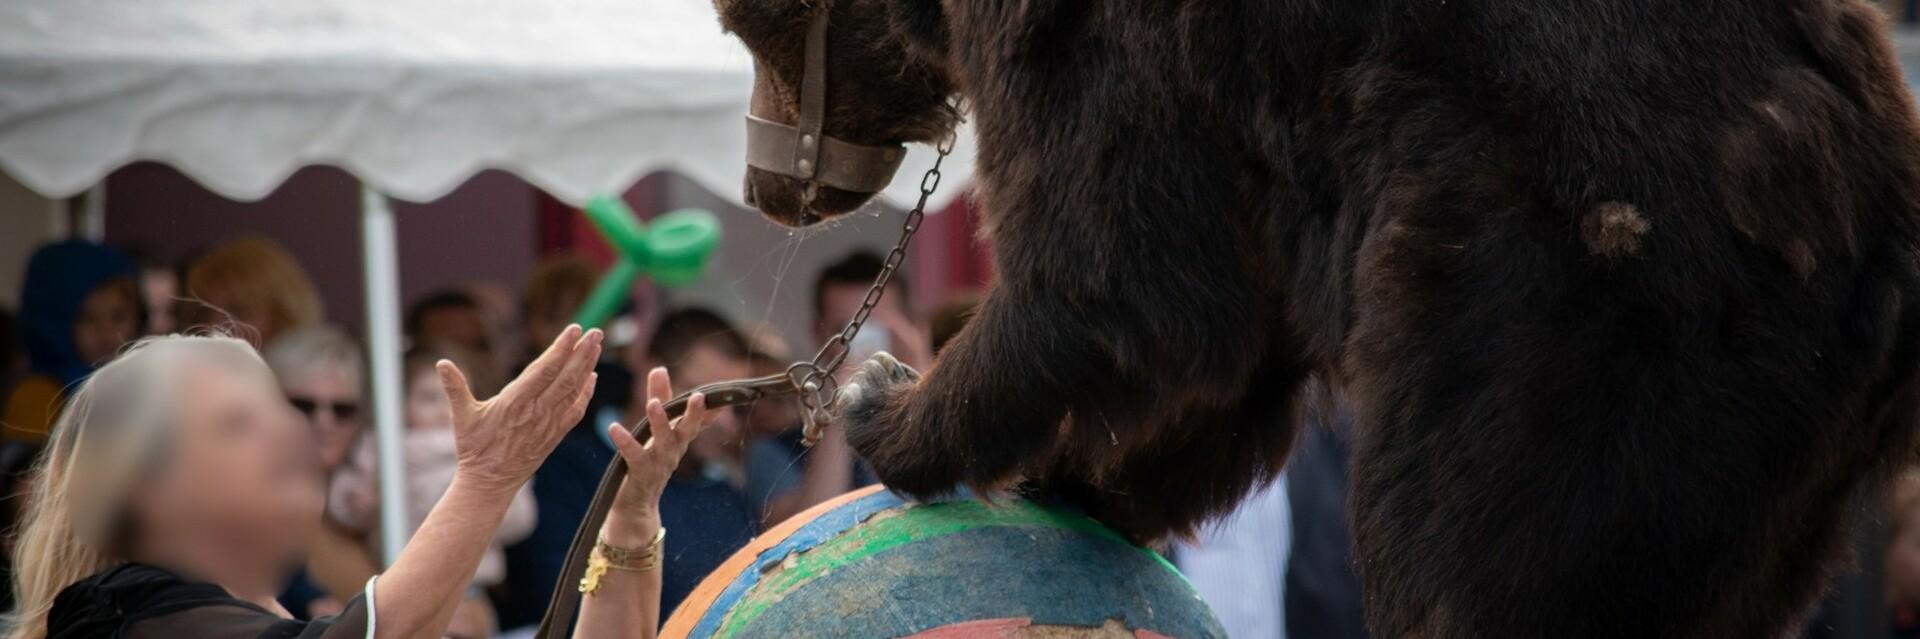 Un ours exploité pour un spectacle médiéval en France